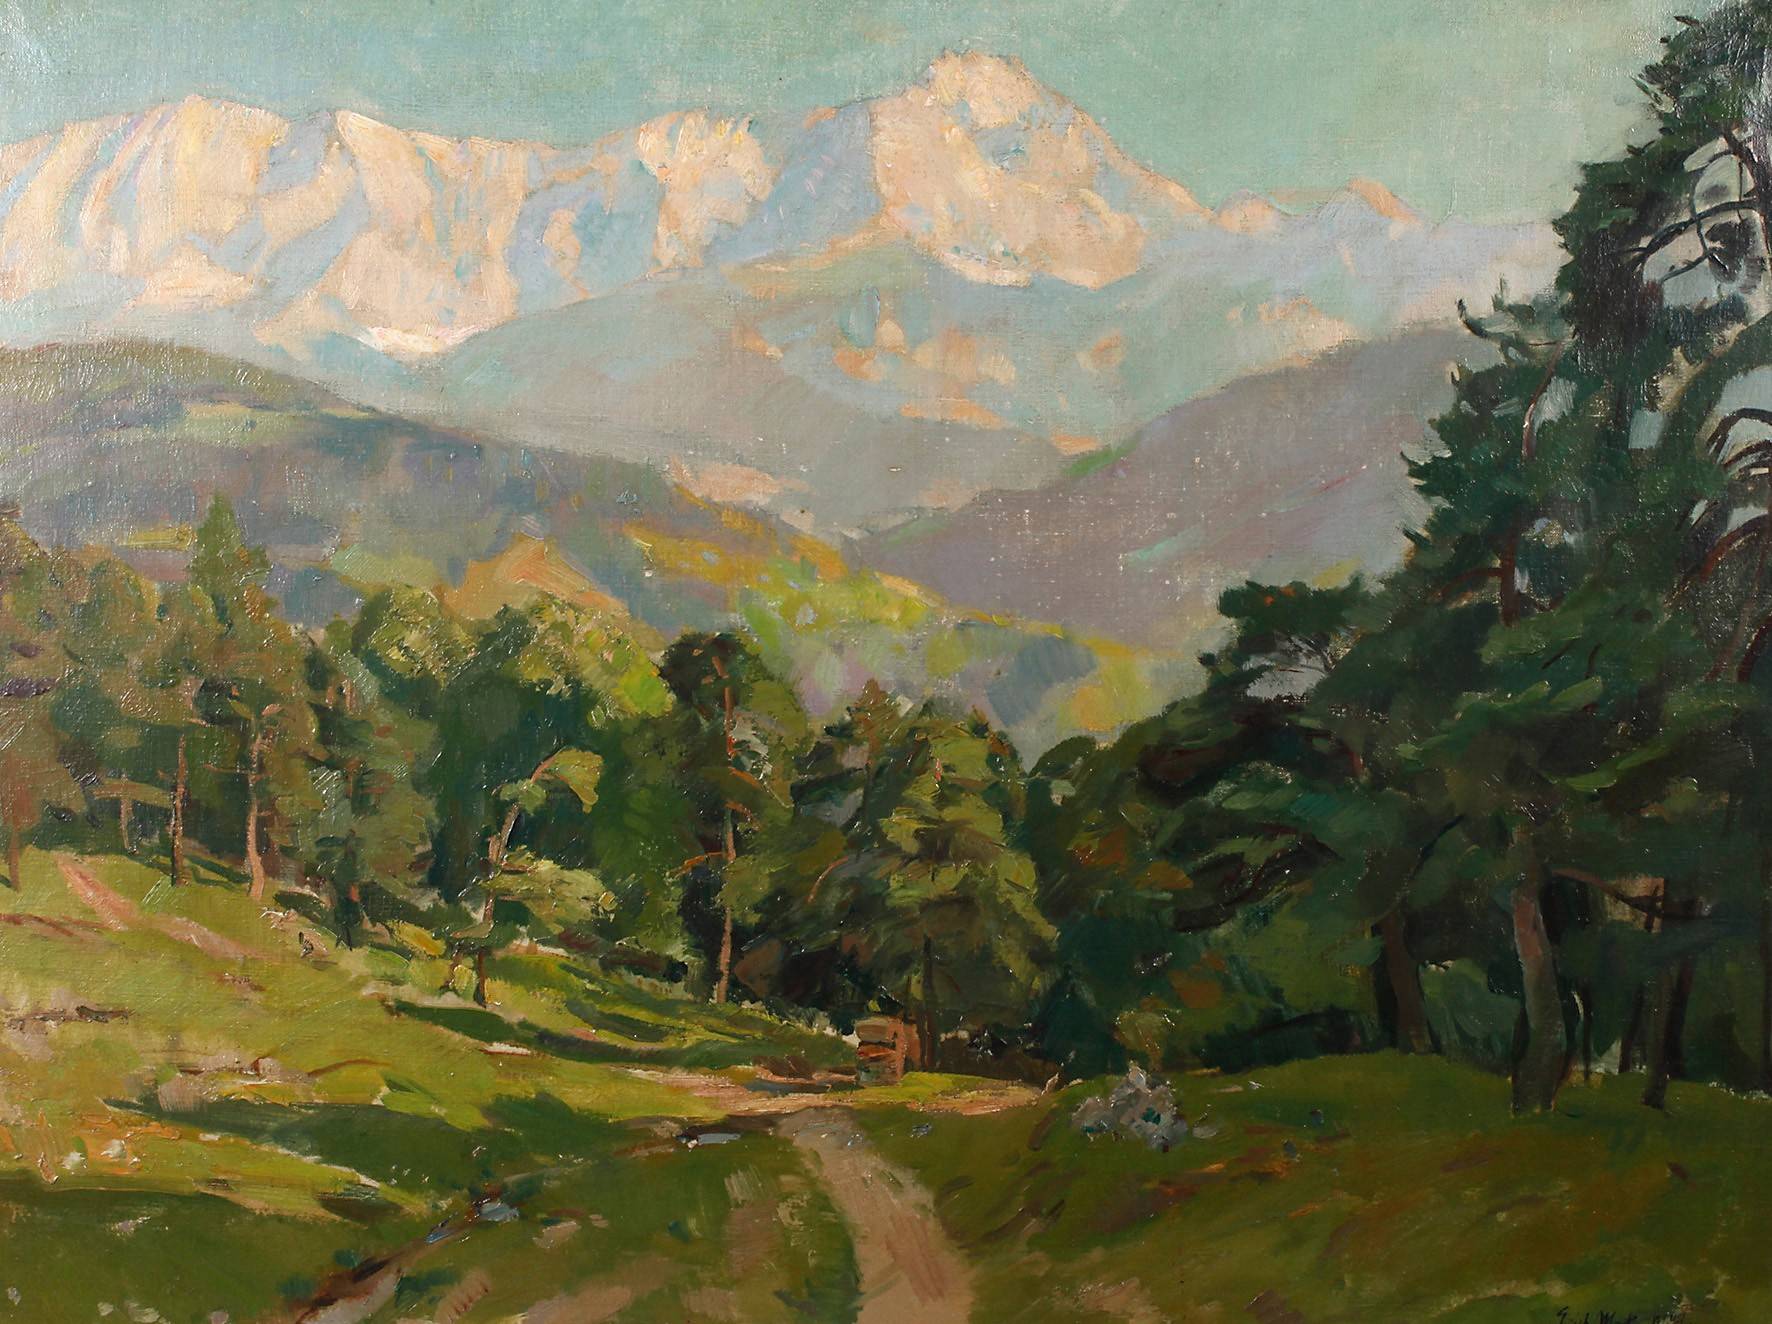 Erich Martin Müller, ”Landschaft mit Dreitorspitze”